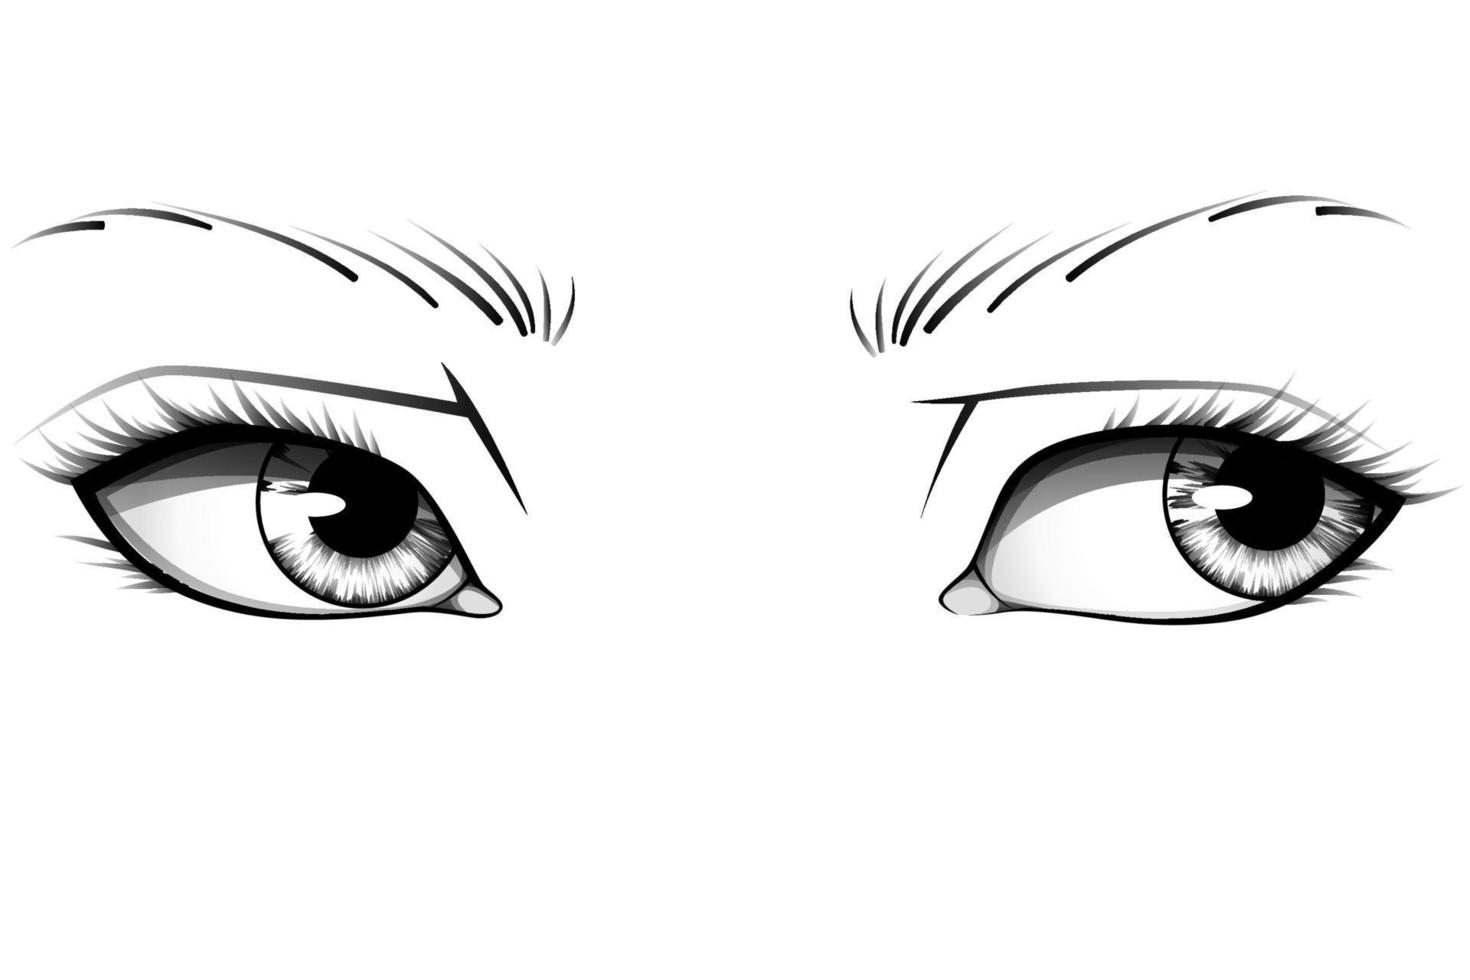 occhi di donna realistici disegnati a mano con iridi, sopracciglia e ciglia dettagliate. tipografia illustrazione vettoriale